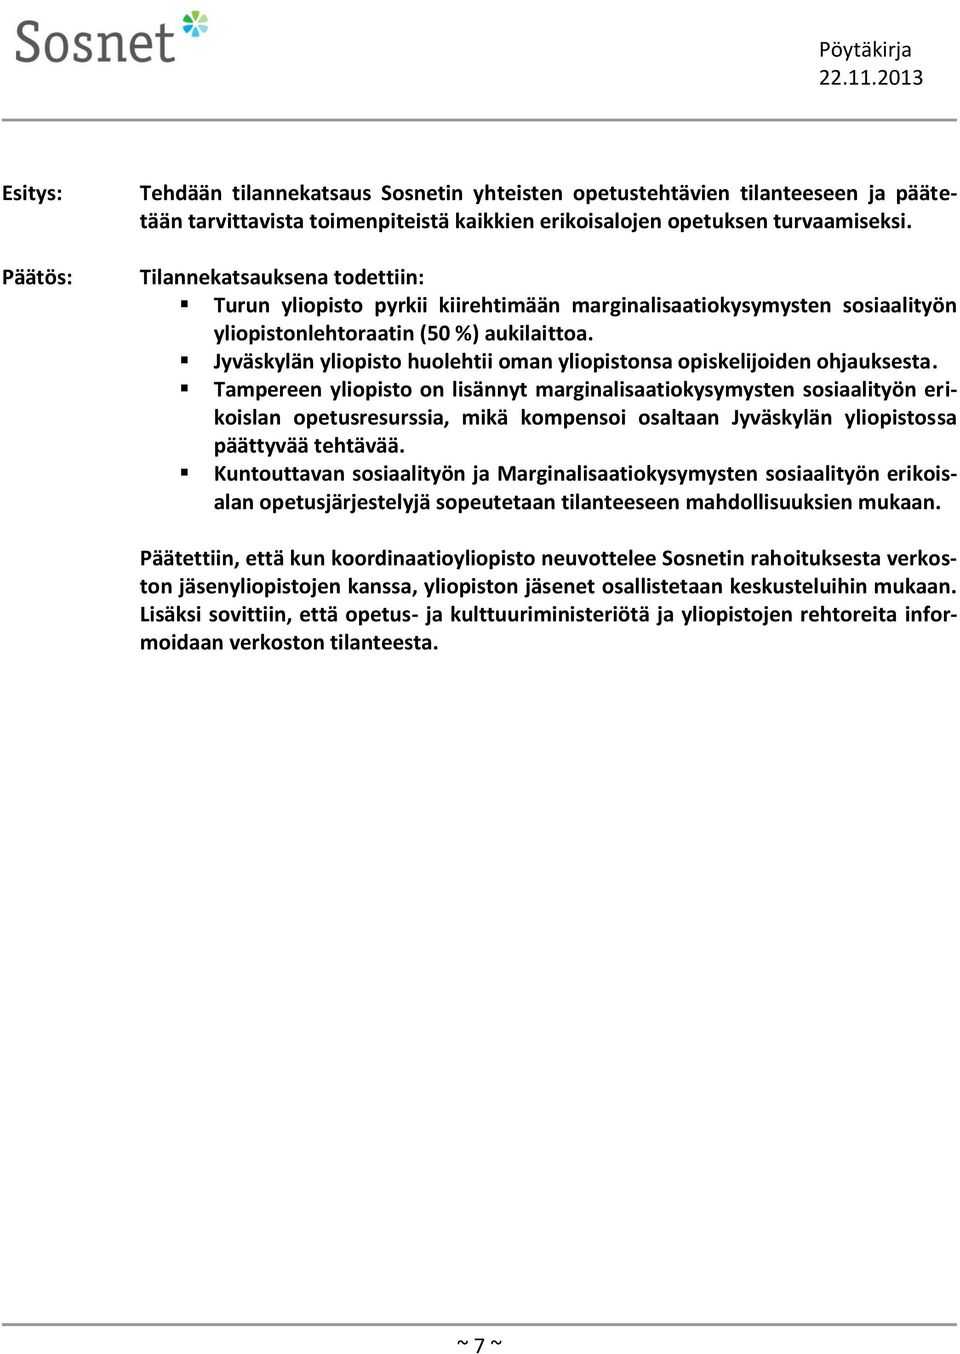 Jyväskylän yliopisto huolehtii oman yliopistonsa opiskelijoiden ohjauksesta.